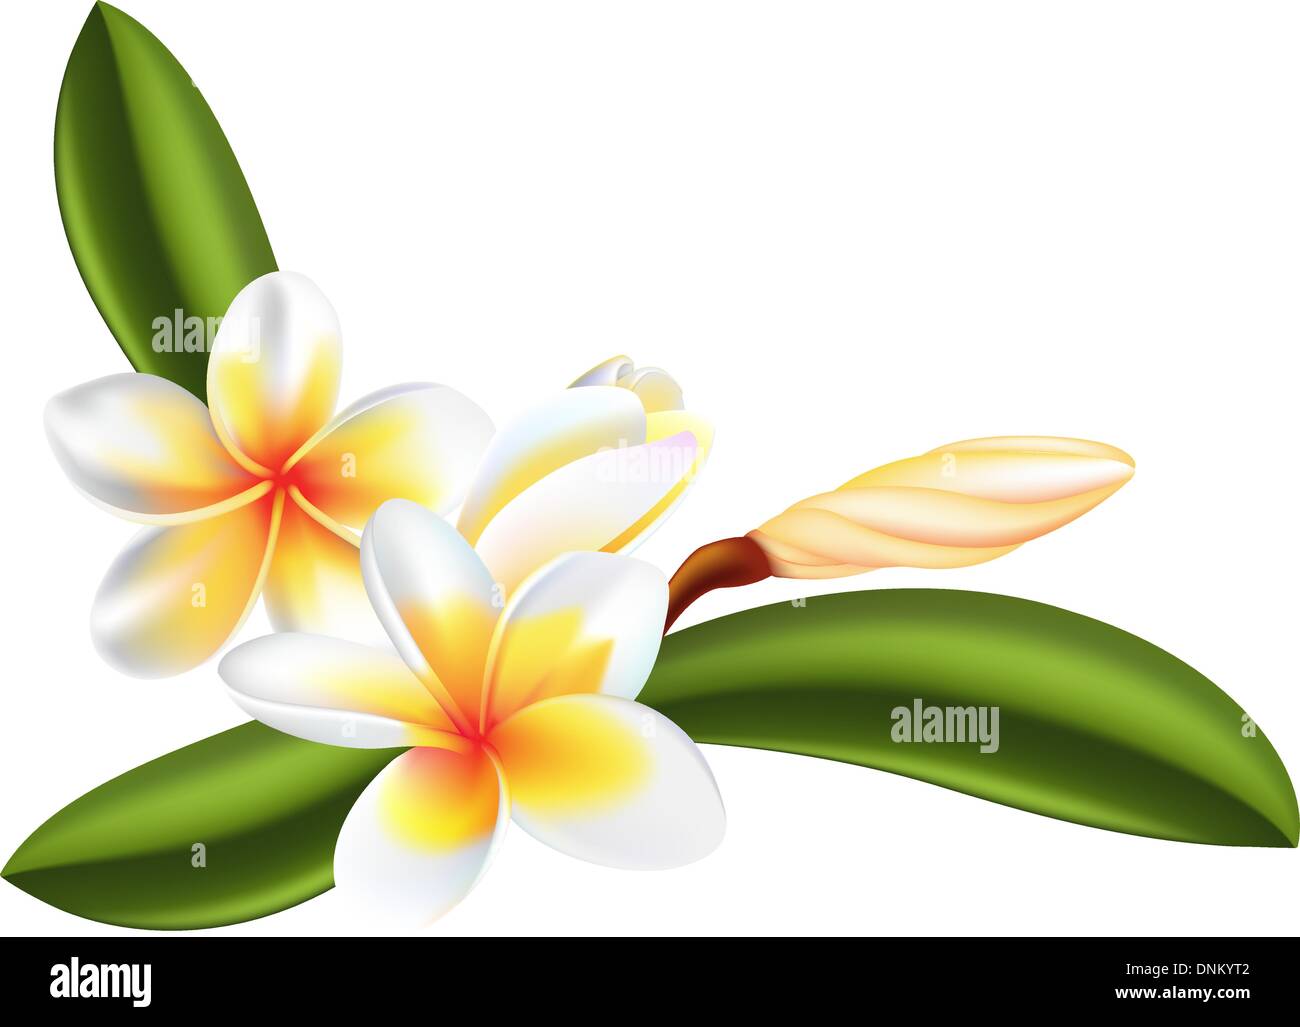 Illustrazione della bella frangipani o fiori di plumeria Illustrazione Vettoriale